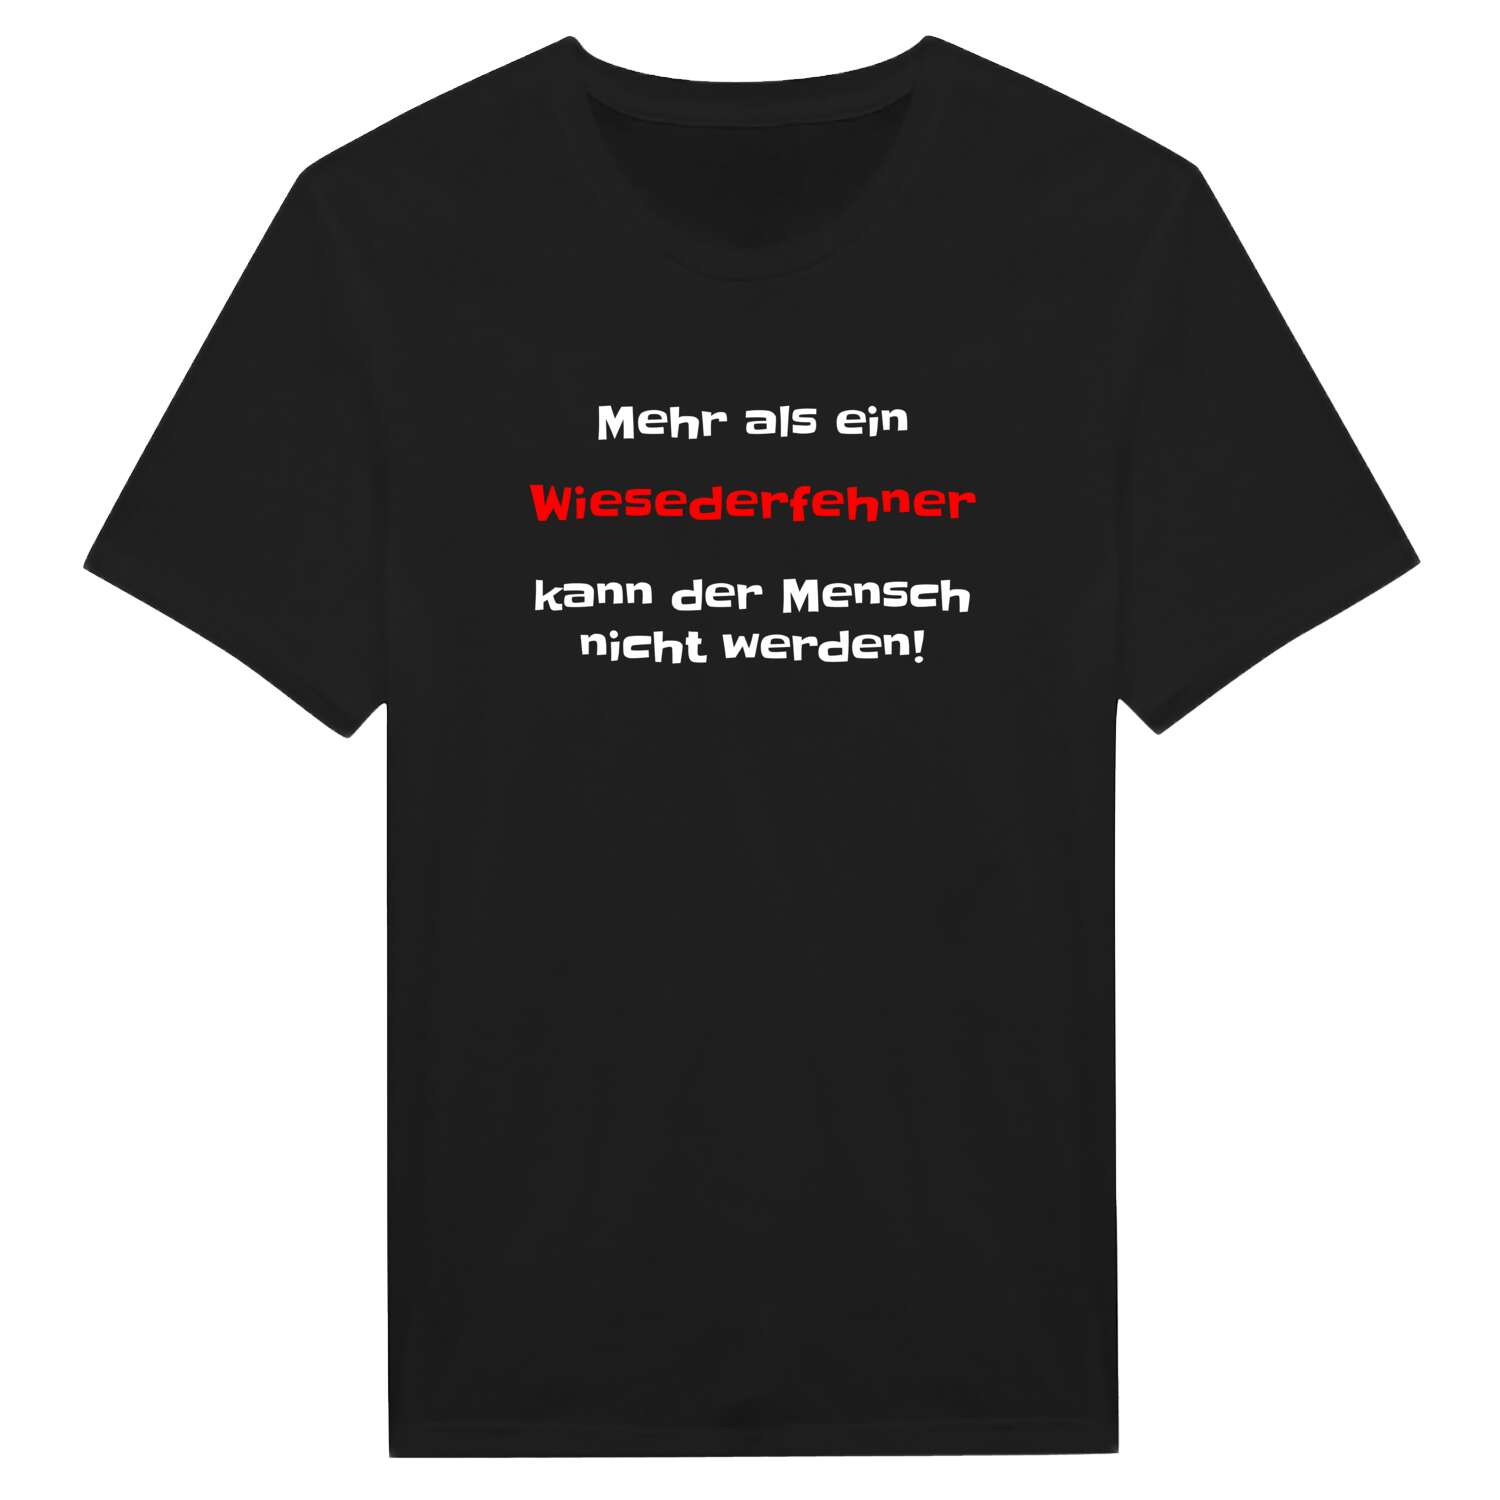 Wiesederfehn T-Shirt »Mehr als ein«